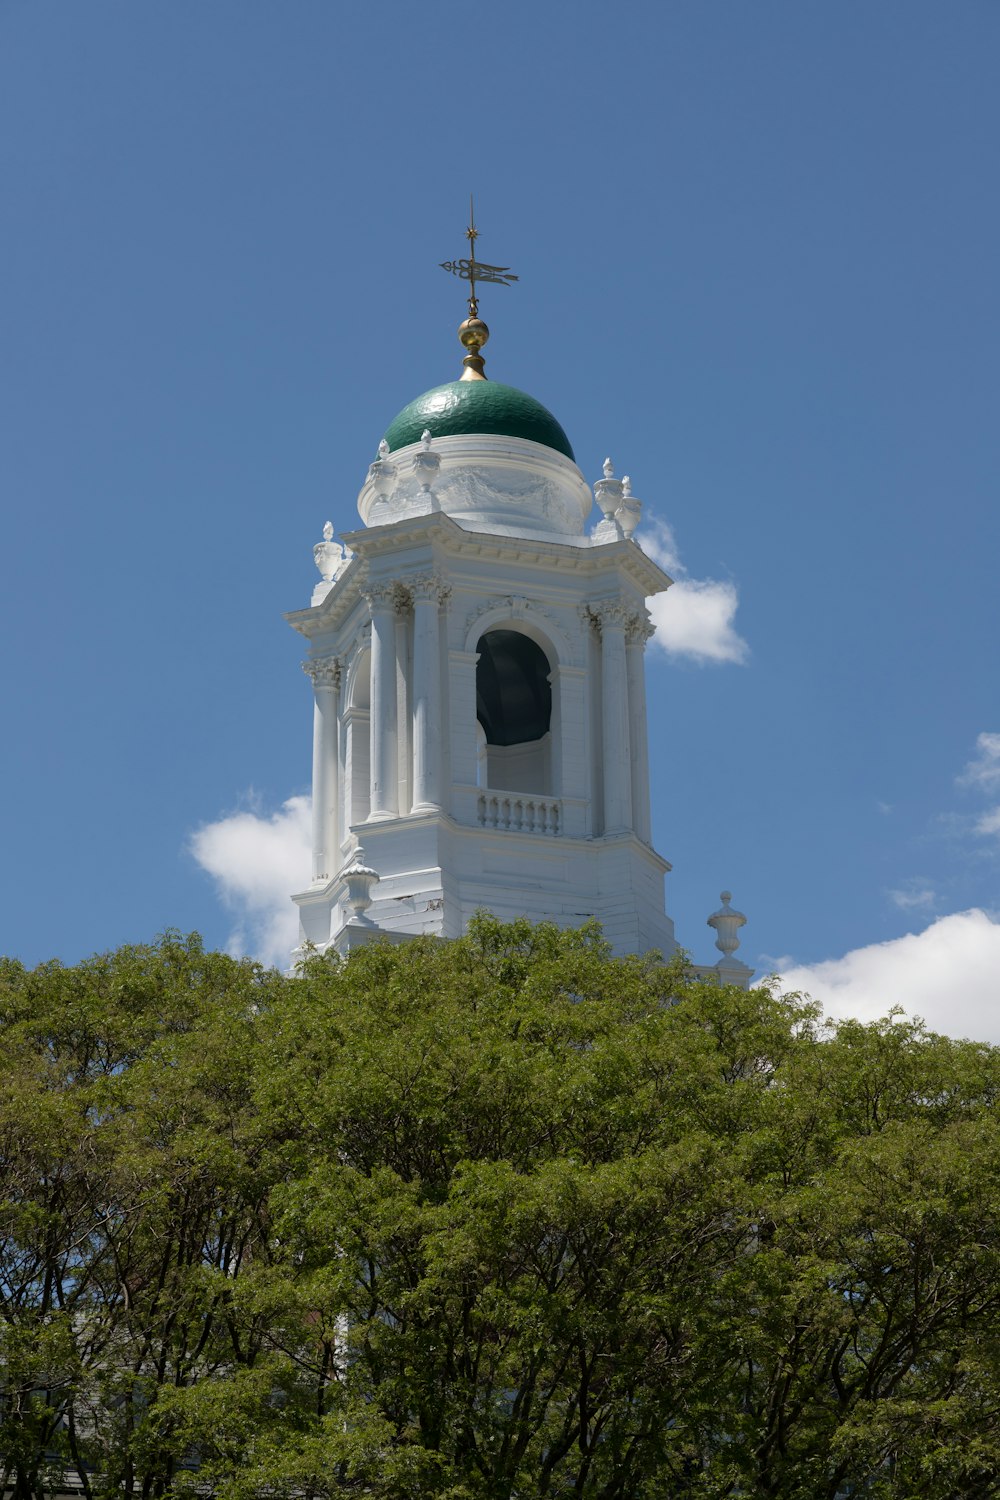 緑のドームと十字架が上にある白い建物